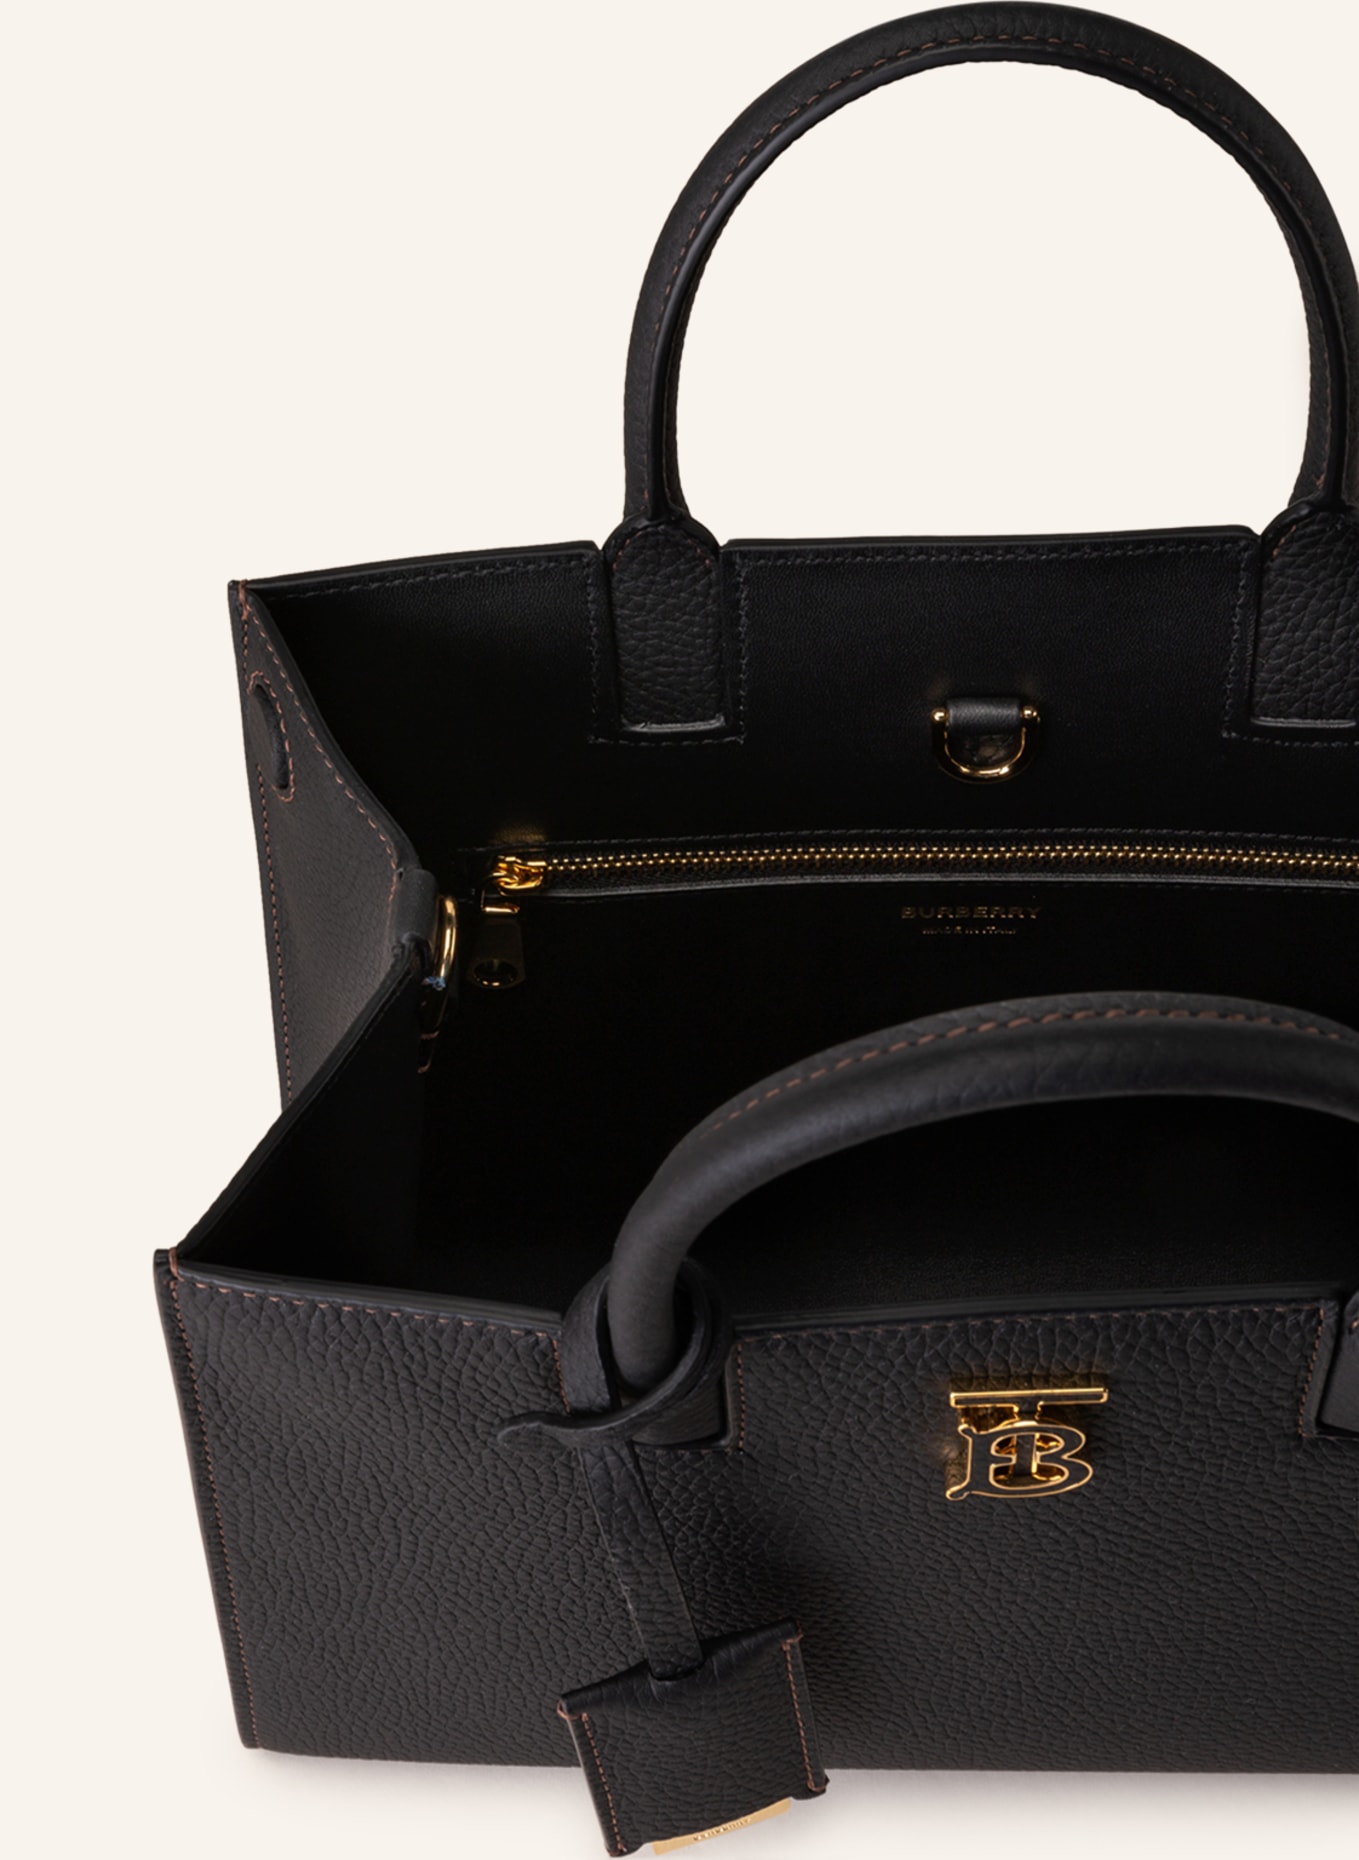 Burberry Handbag Tb In Black | Breuninger